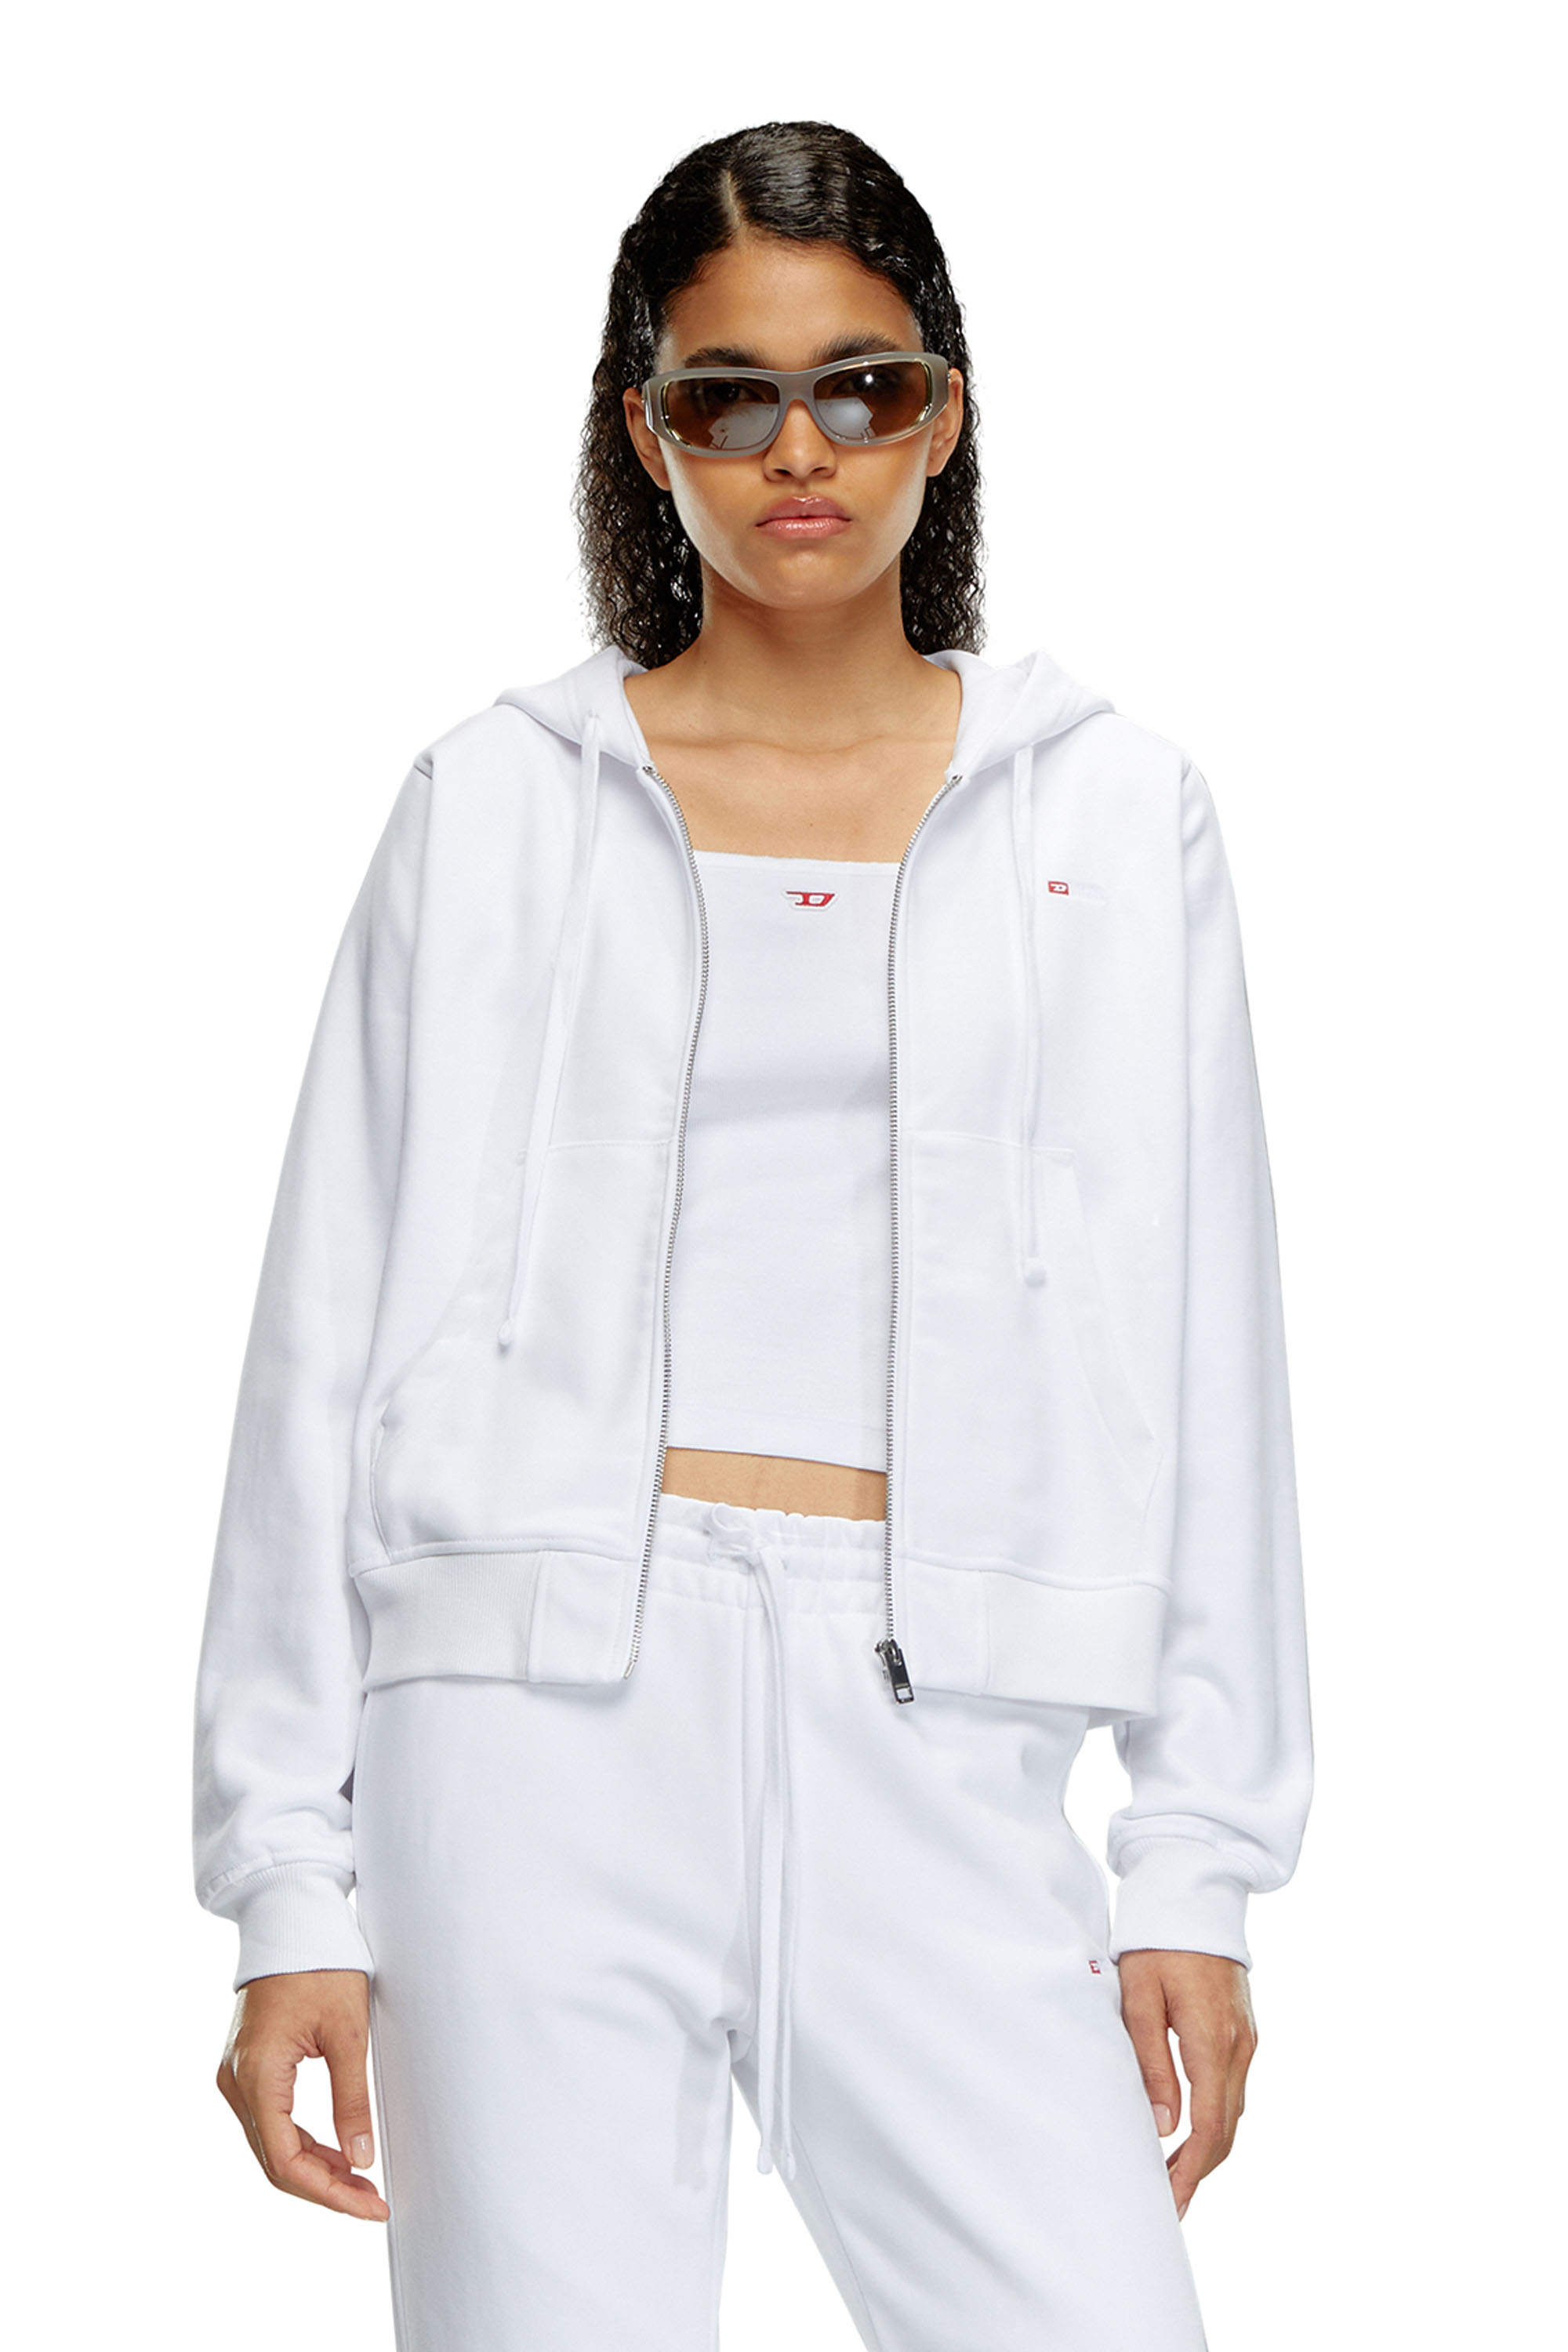 Diesel - Sweat-shirt à capuche avec micro logo brodé - Pull Cotton - Femme - Blanc